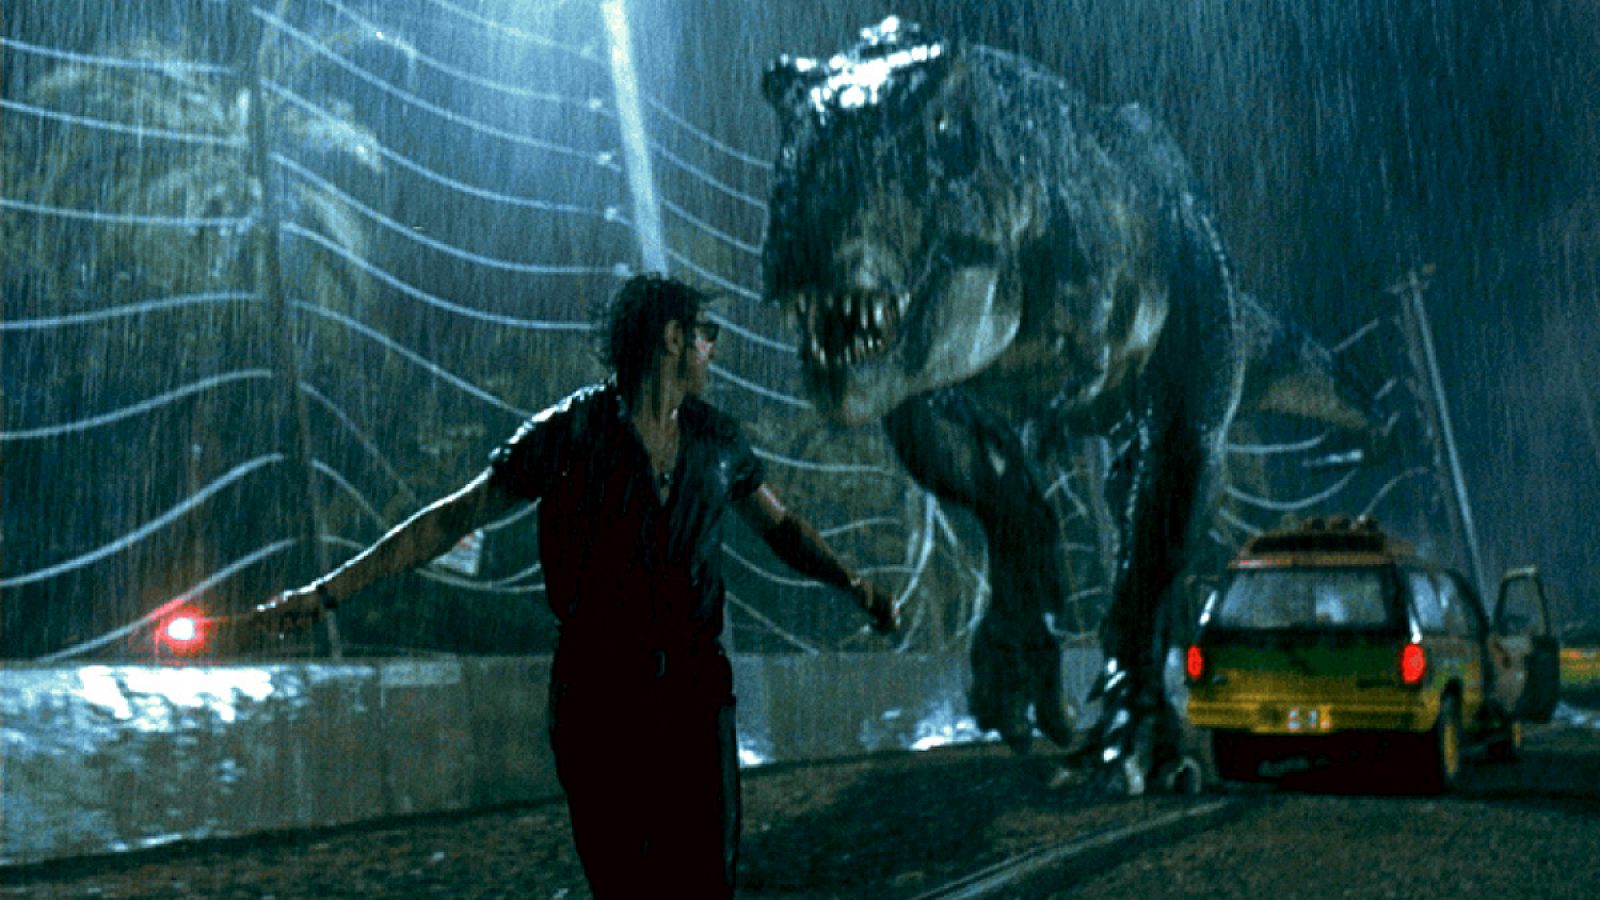 Escena de Jurassic Park con el tiranosaurio persiguiendo al personaje interpretado por Jeff Goldblum